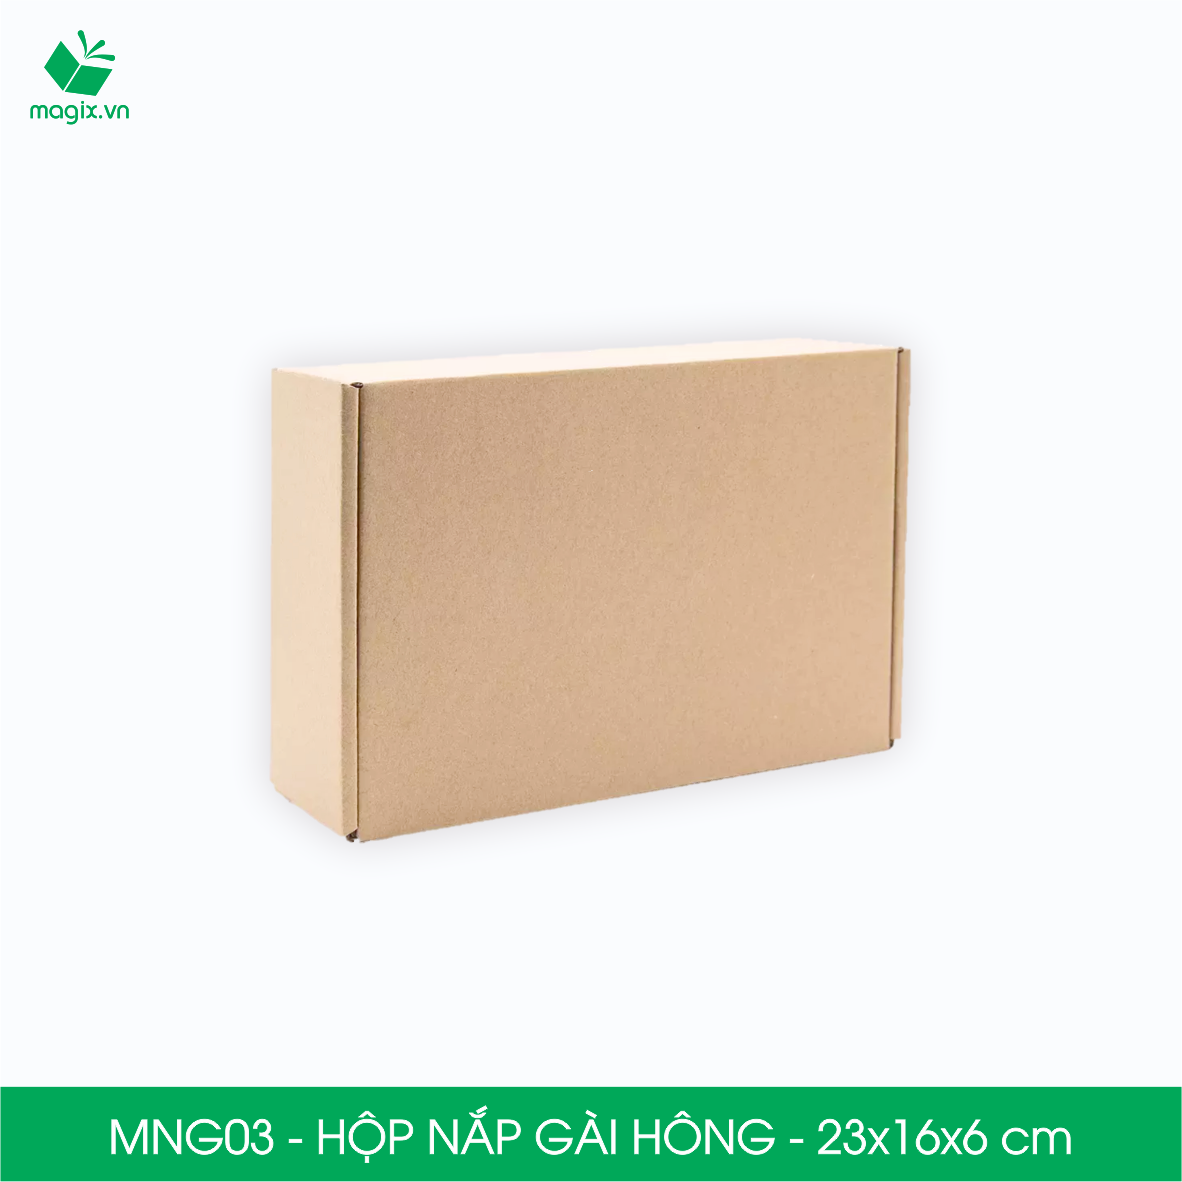 MNG03 - 23x16x6cm - Combo 60 hộp nắp gài hông - Thùng carton đóng hàng